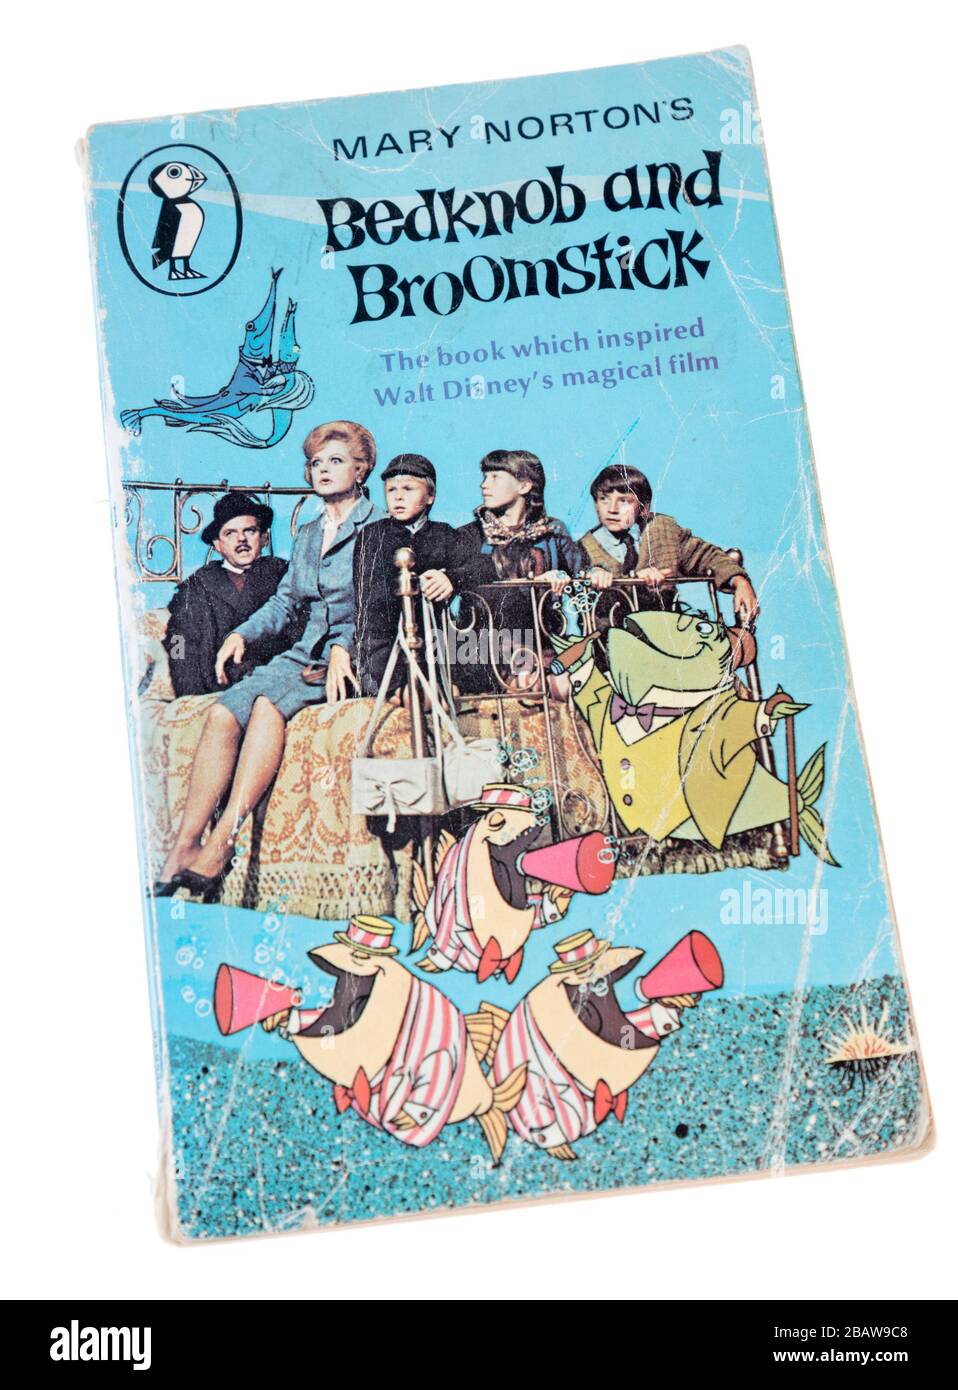 Bedchnob und Broomstick Taschenbuch von Mary Norton erstmals 1945 veröffentlicht, pugblished von Puffin 1970, mit Disney-Filmfiguren auf dem Cover Stockfoto